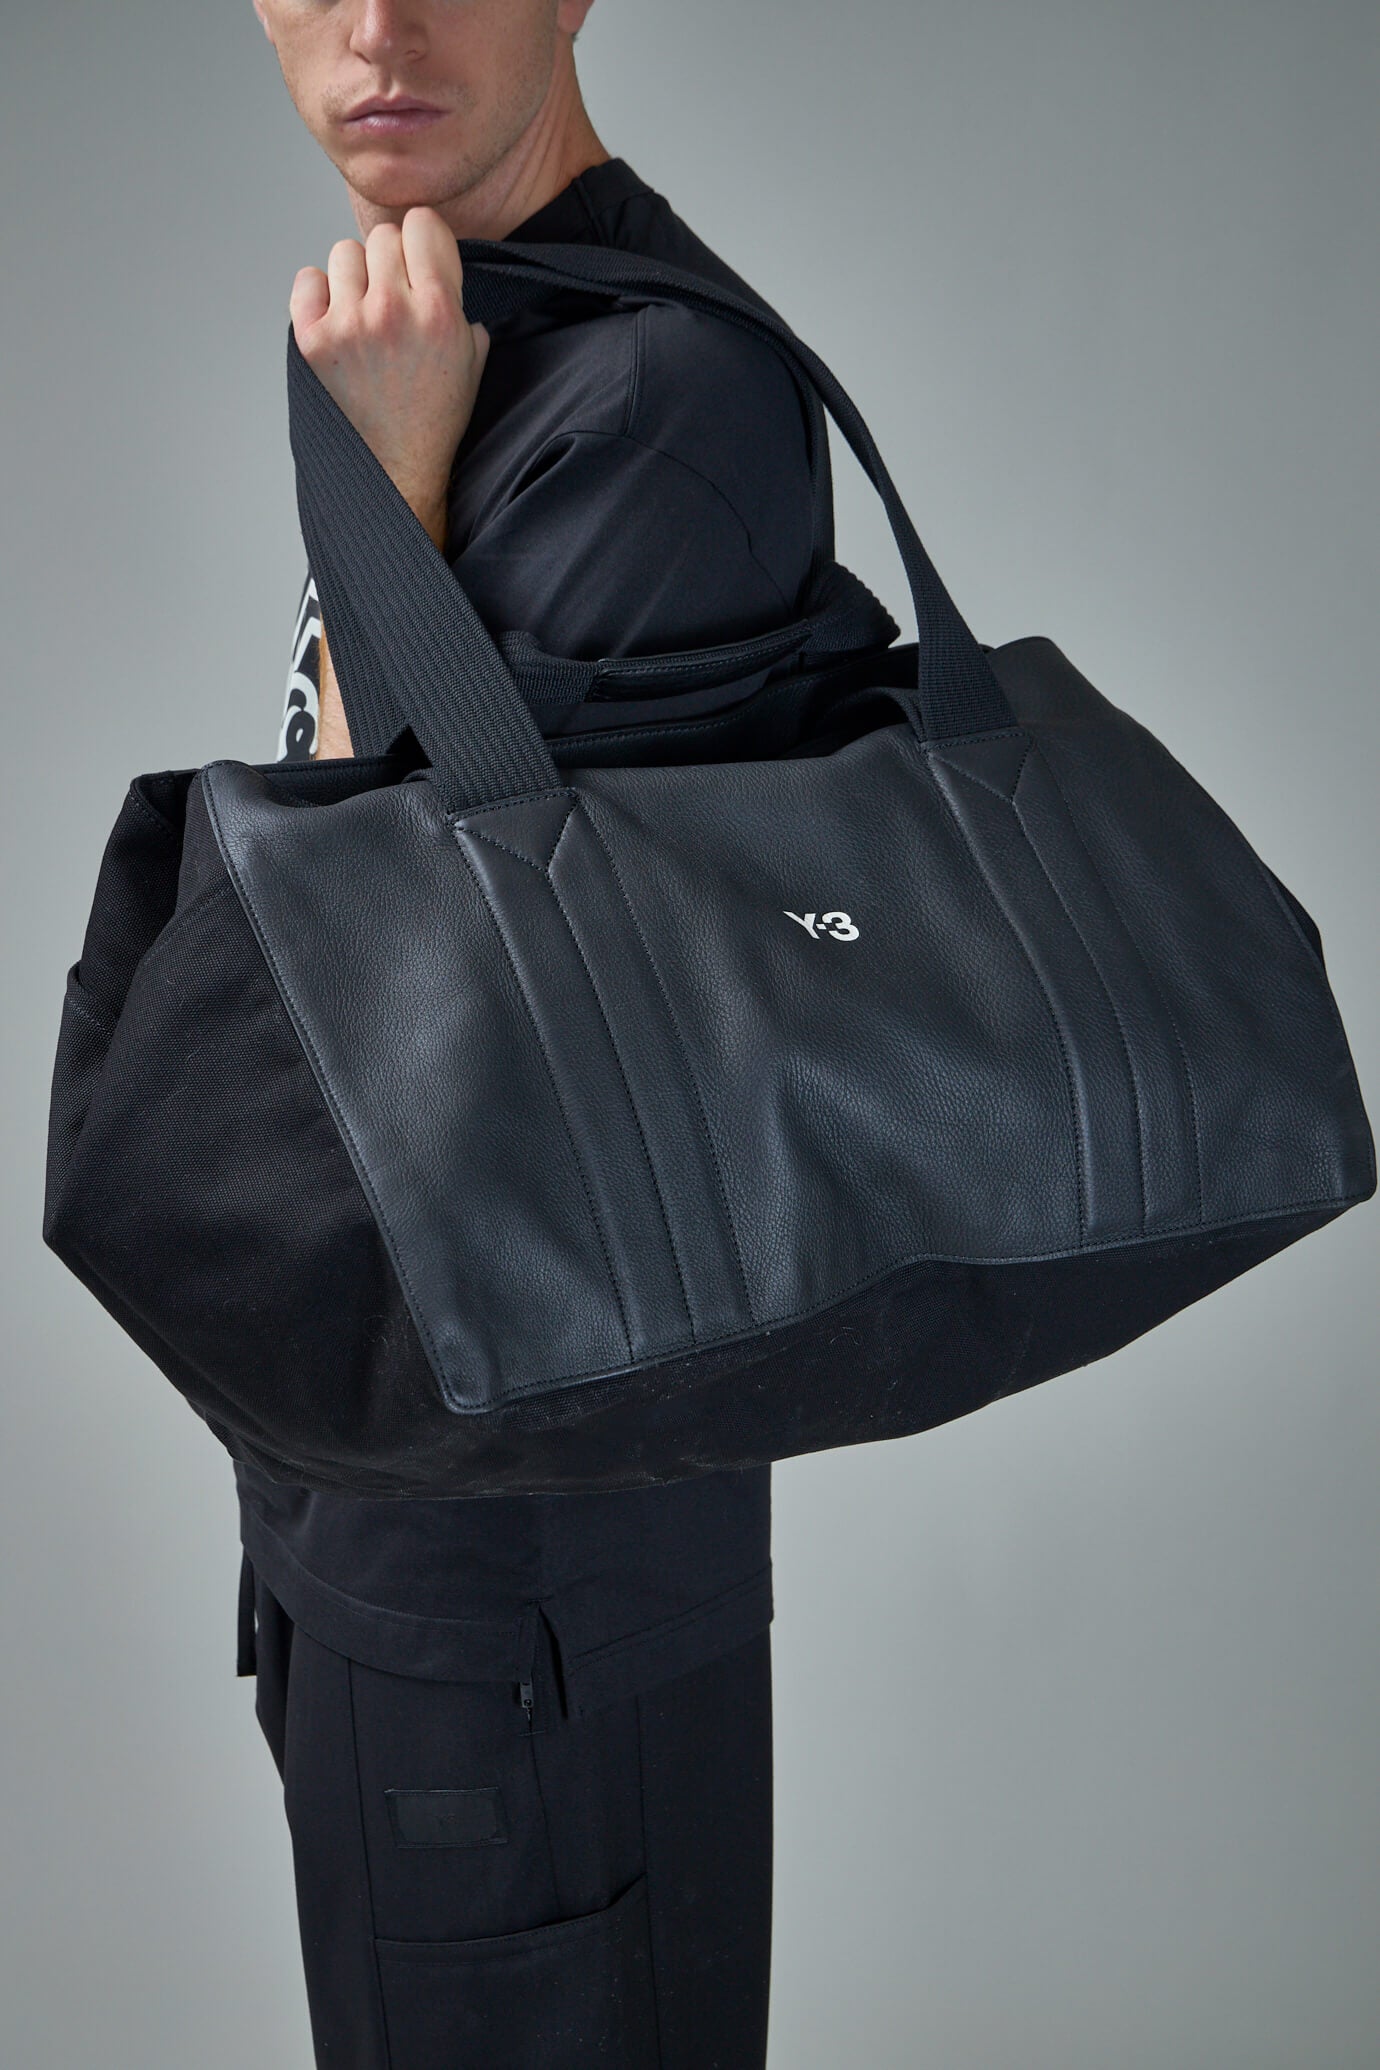 Y-3 Lux Gym Bag in Black